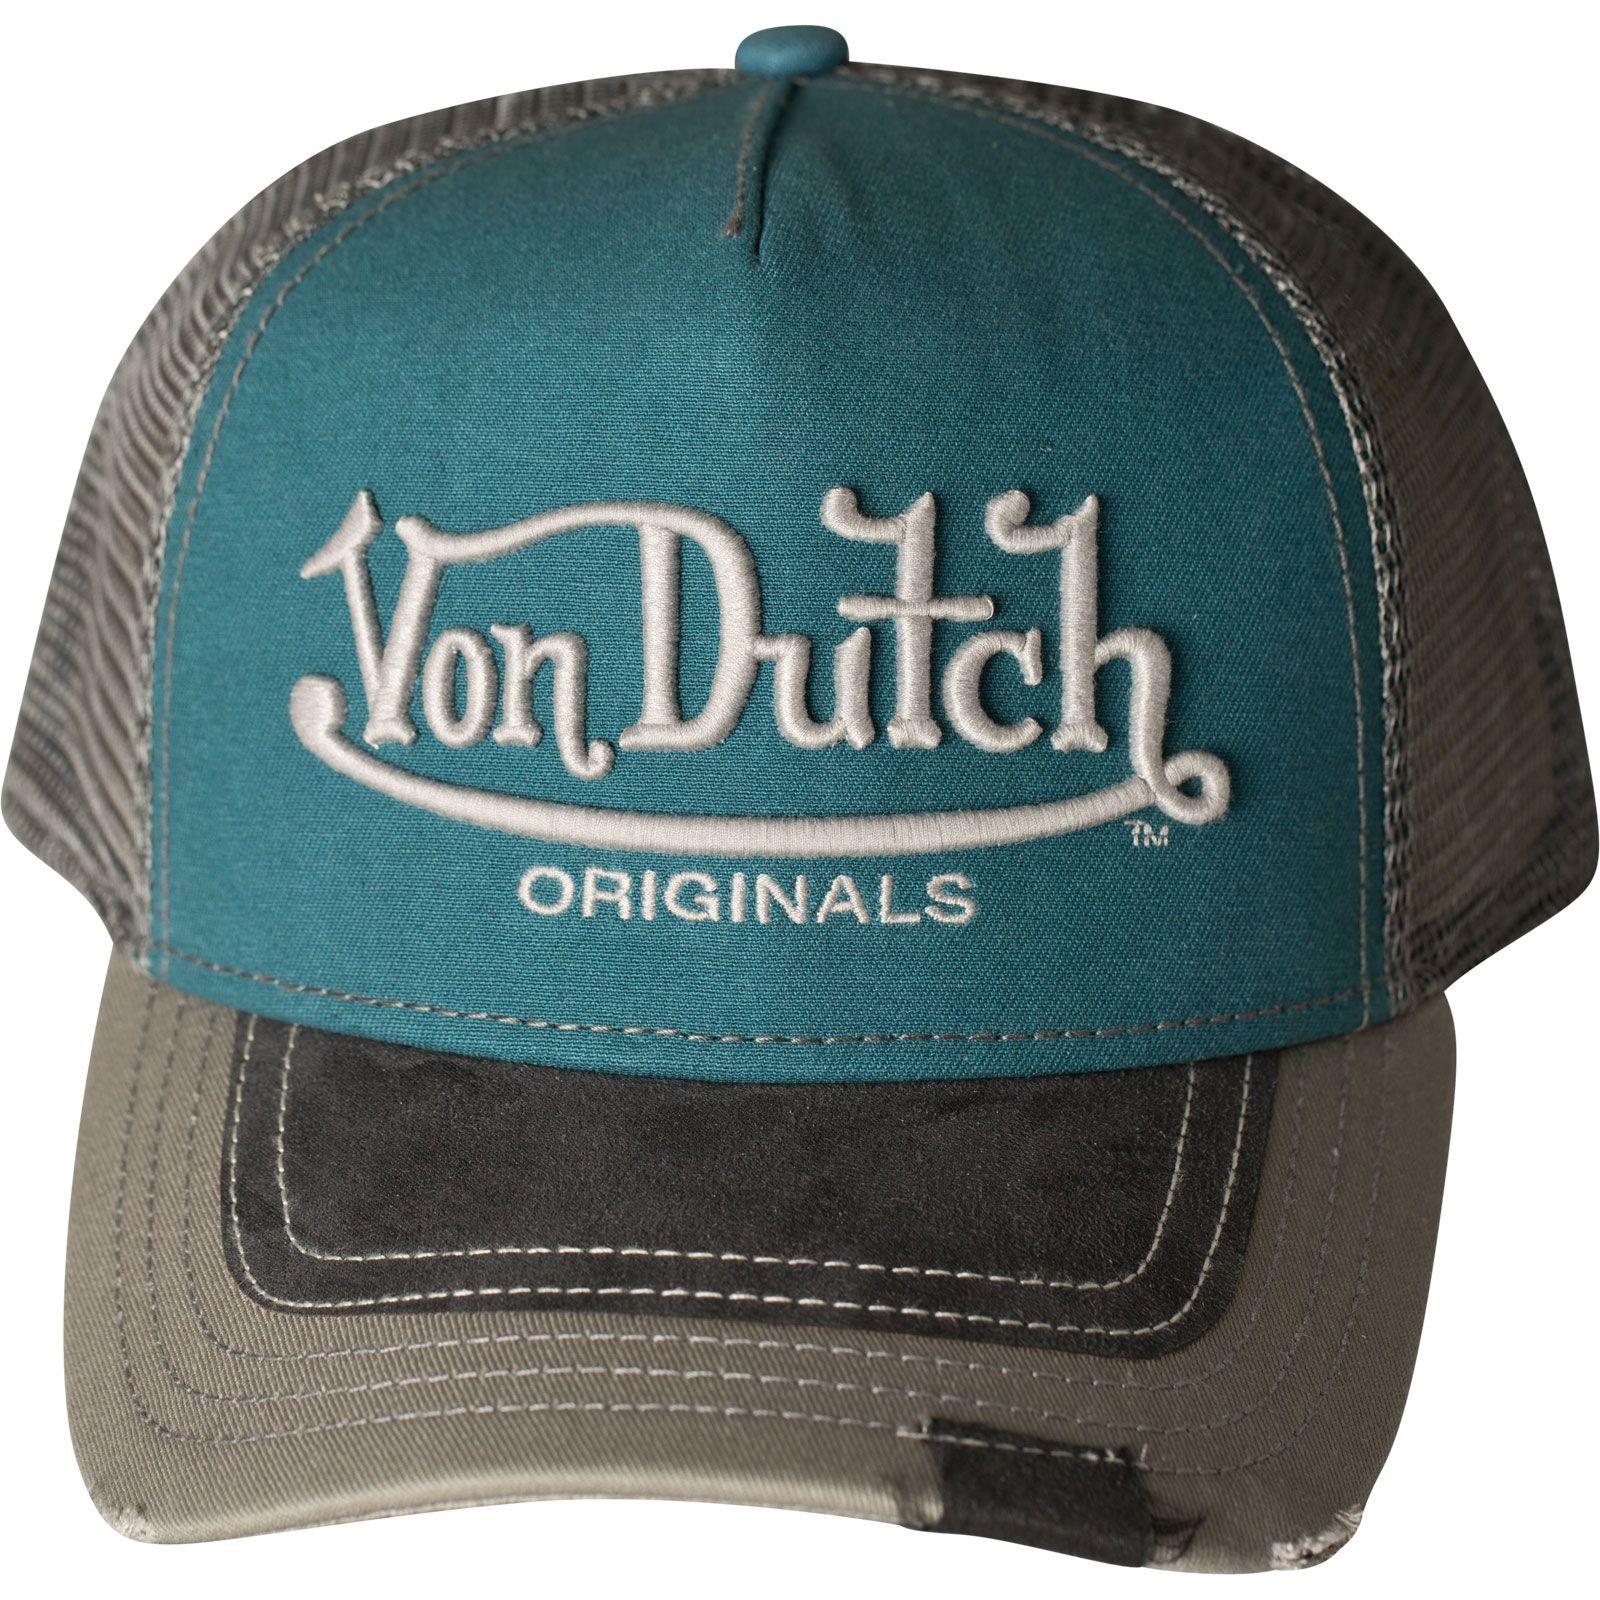 Von Logo - Logo VDHT 010 Premium Trucker Cap by Von Dutch Cap with increased 3D ...